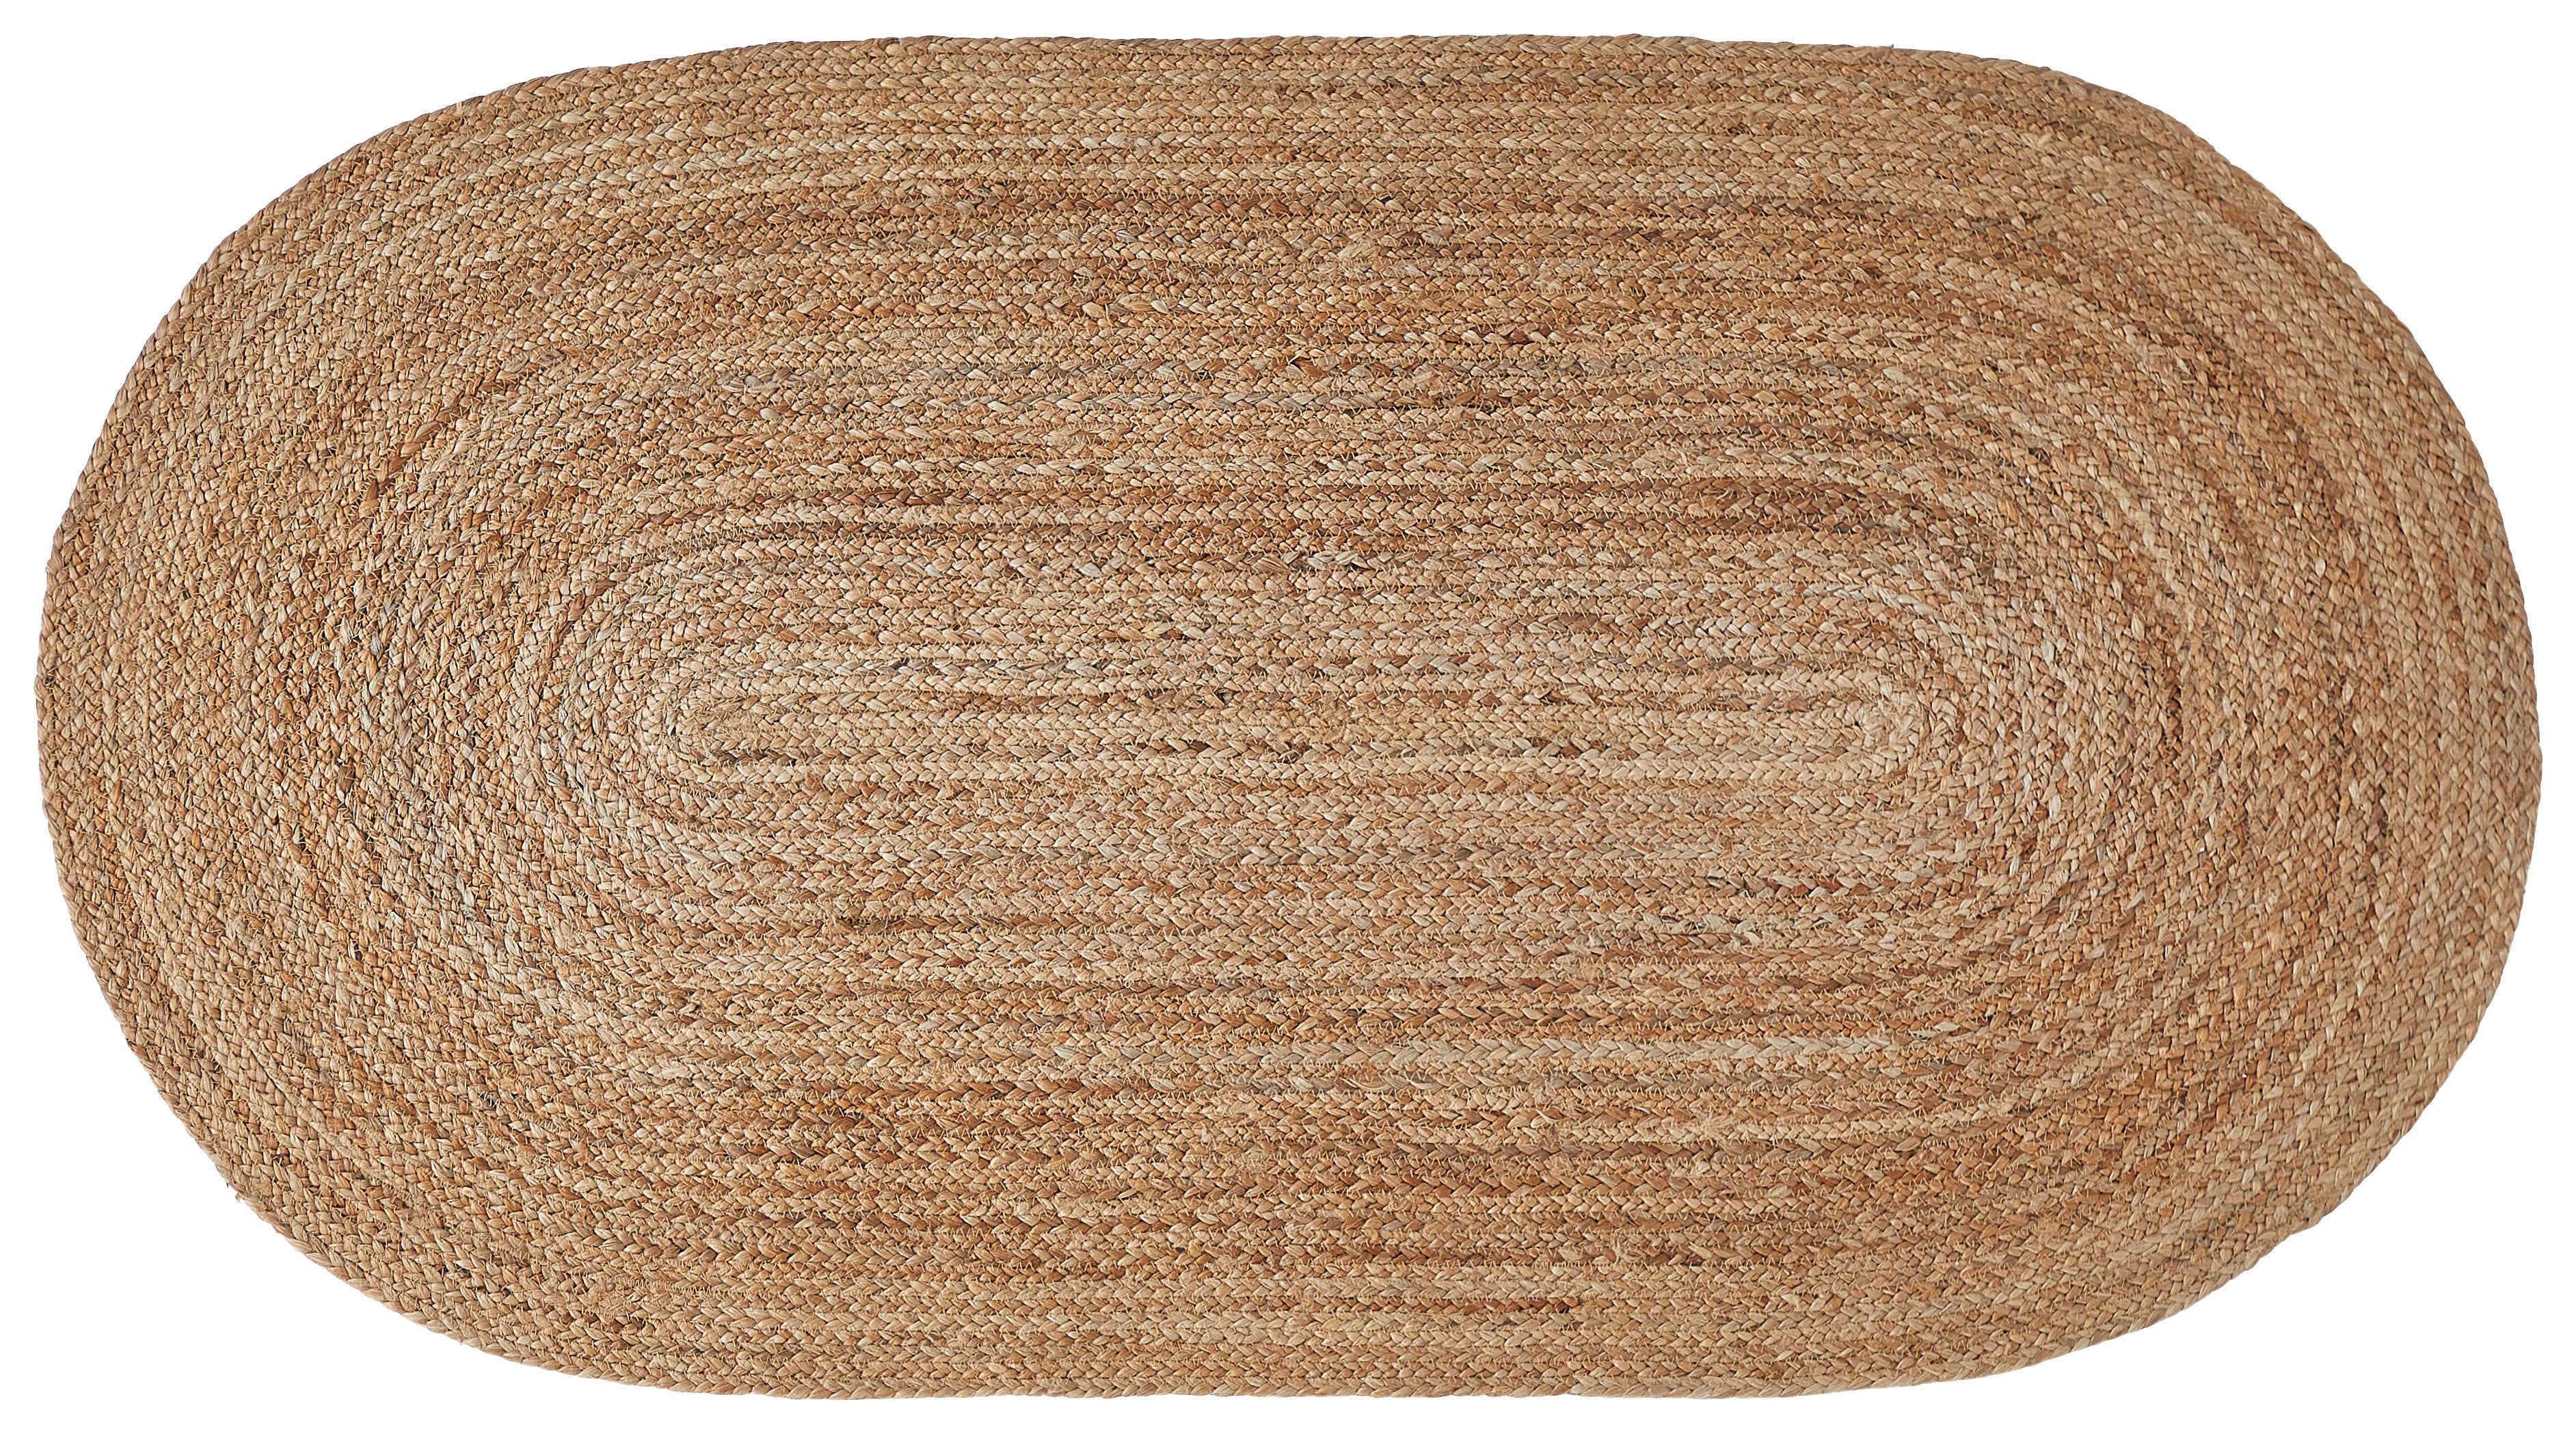 Juteteppich Agra Oval  - Braun, Natur, Textil (80/150cm) - Linea Natura